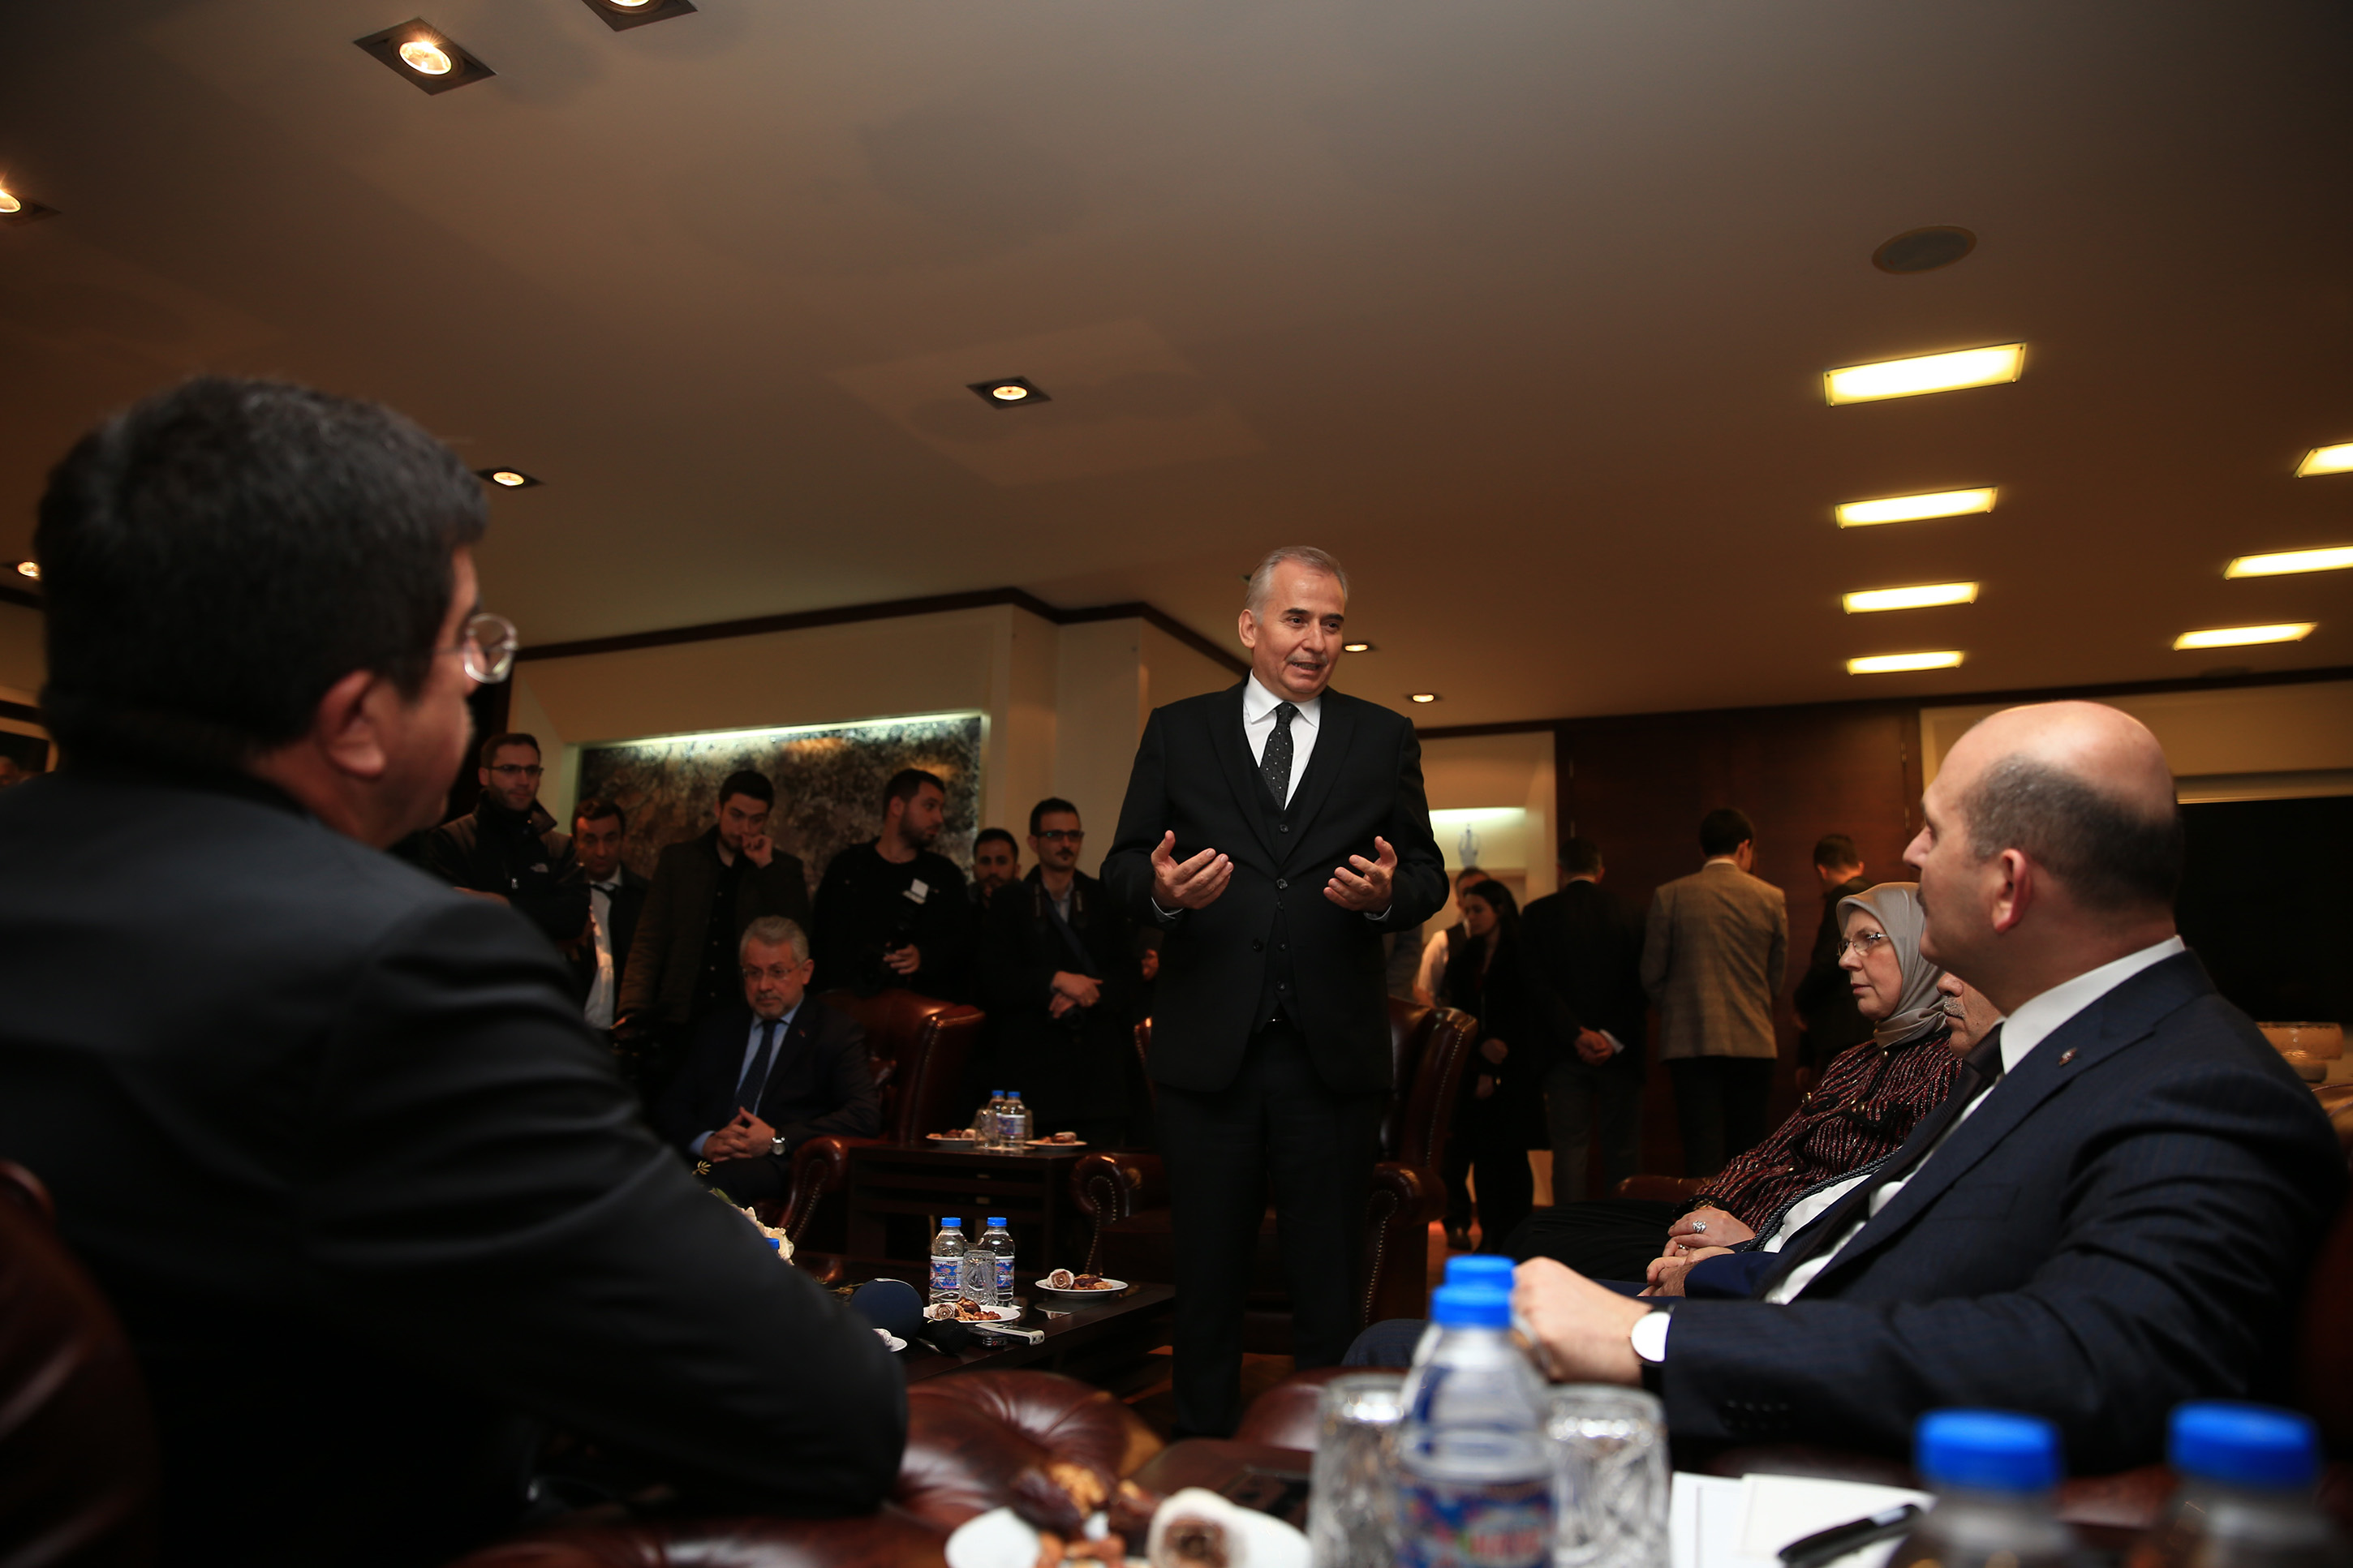 Denizli Büyükşehir Belediye Başkanı Osman Zolan’a övgü